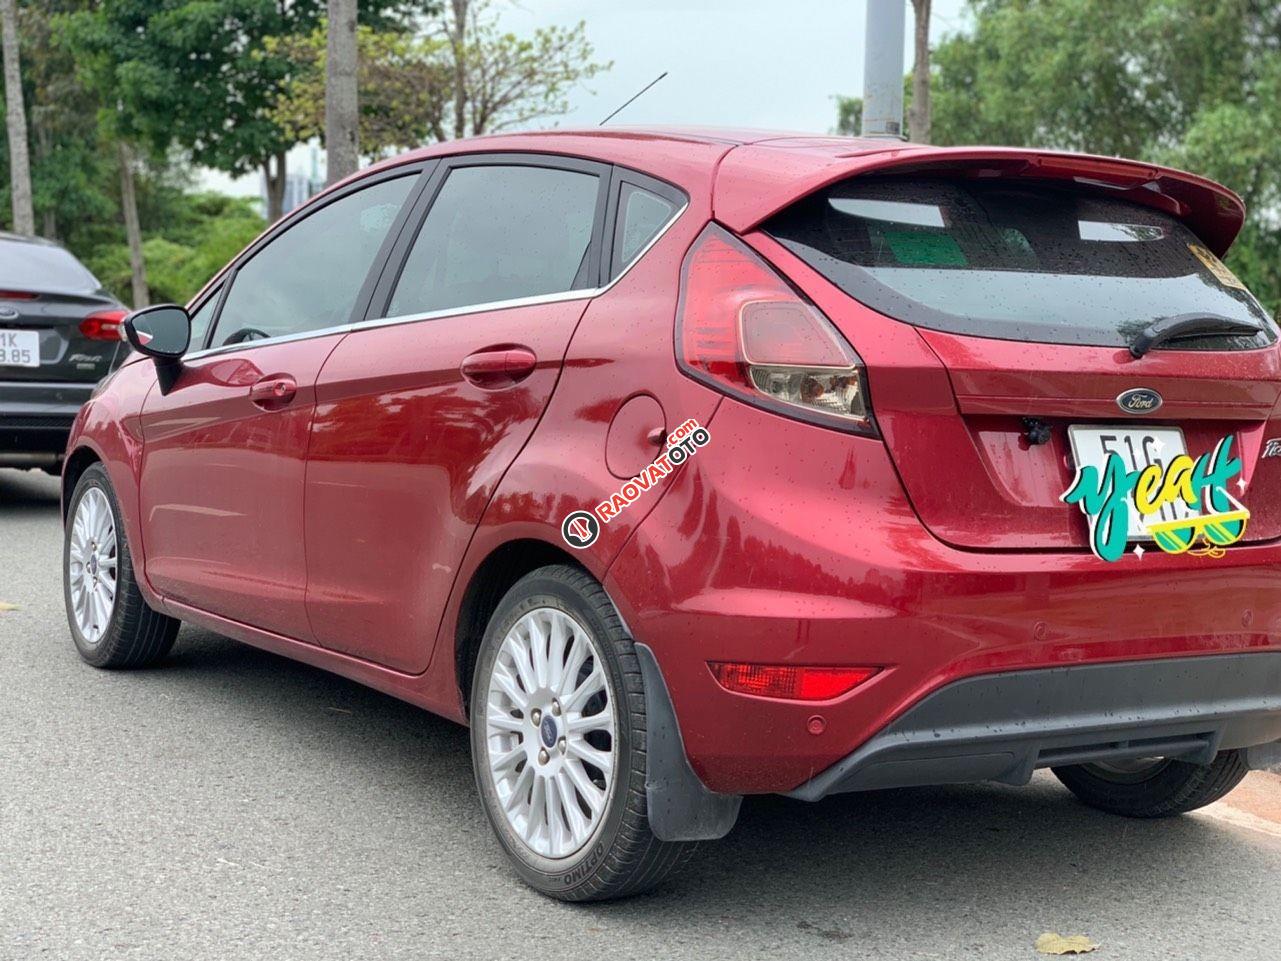 Bán xe Ford Fiesta 2018 Titanium - 1 chủ mới chạy 30.000km - Bao test hãng sản xuất 2018-2